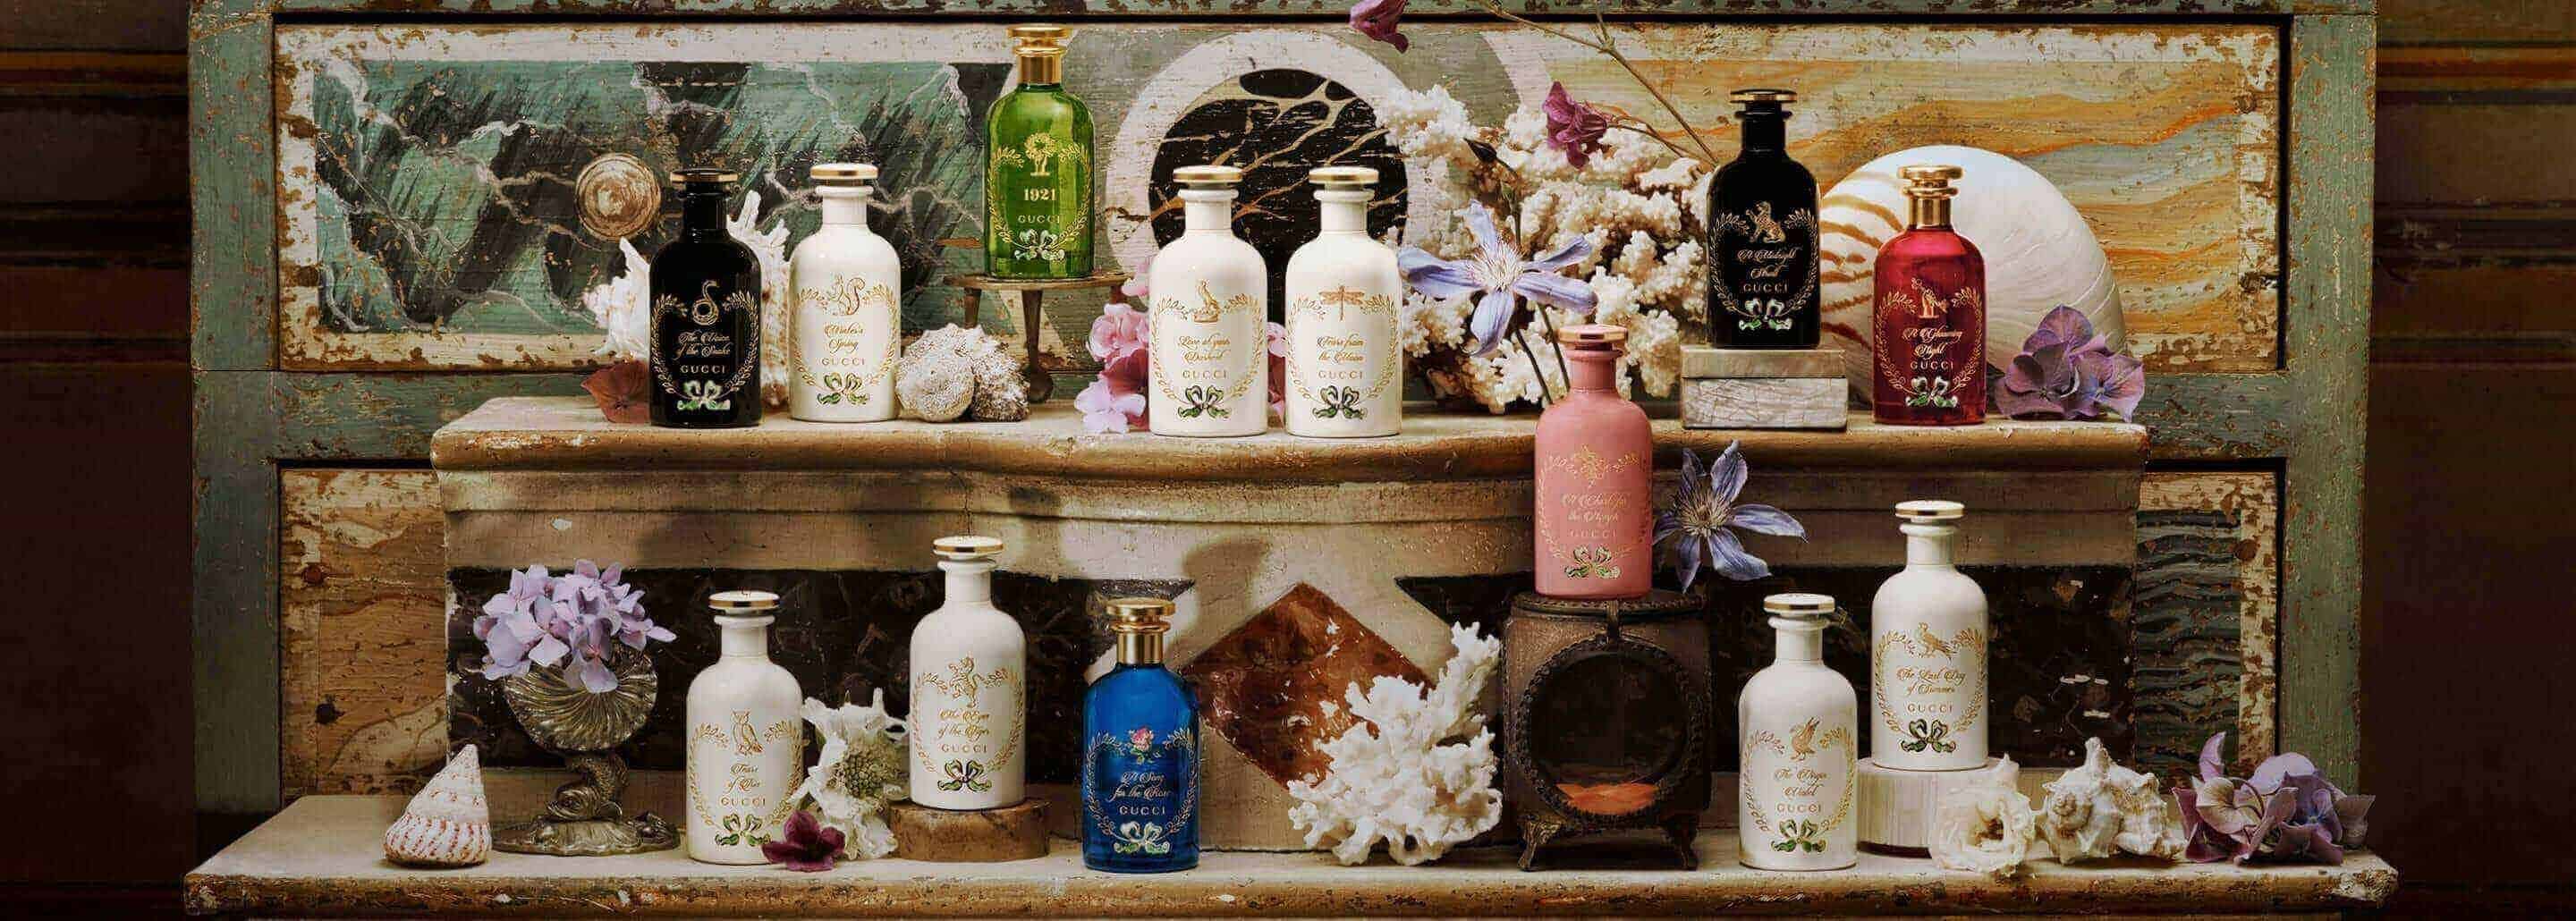 Imagen de un estante de madera en la cual hay varios productos de la marca GUCCI de la colección the alchemist garden